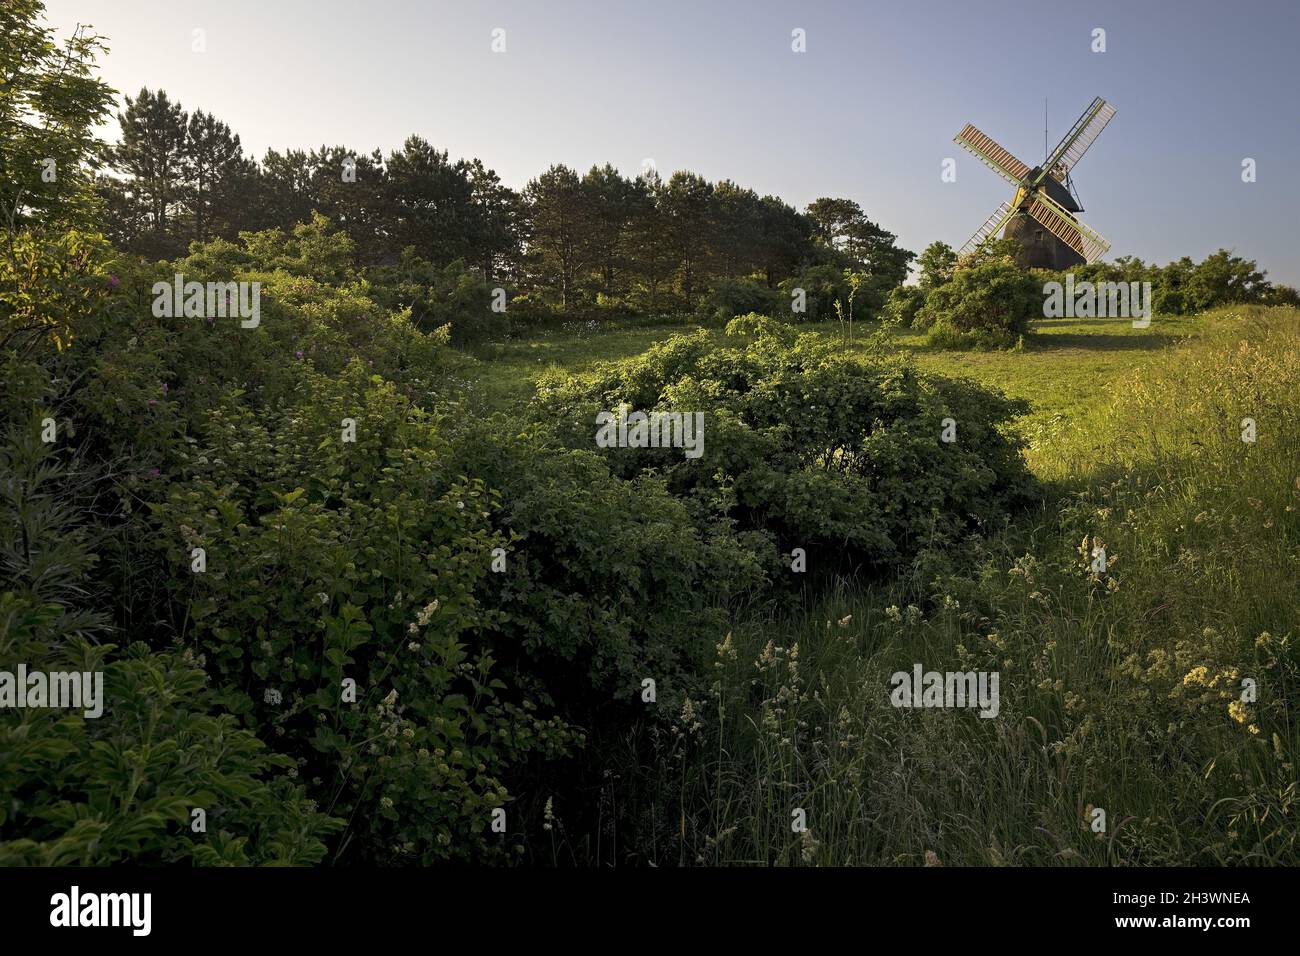 Landschaft mit Windmühle vom Typ Kellerholländer, Nebel, Insel Amrum, Deutschland, Europa Stockfoto